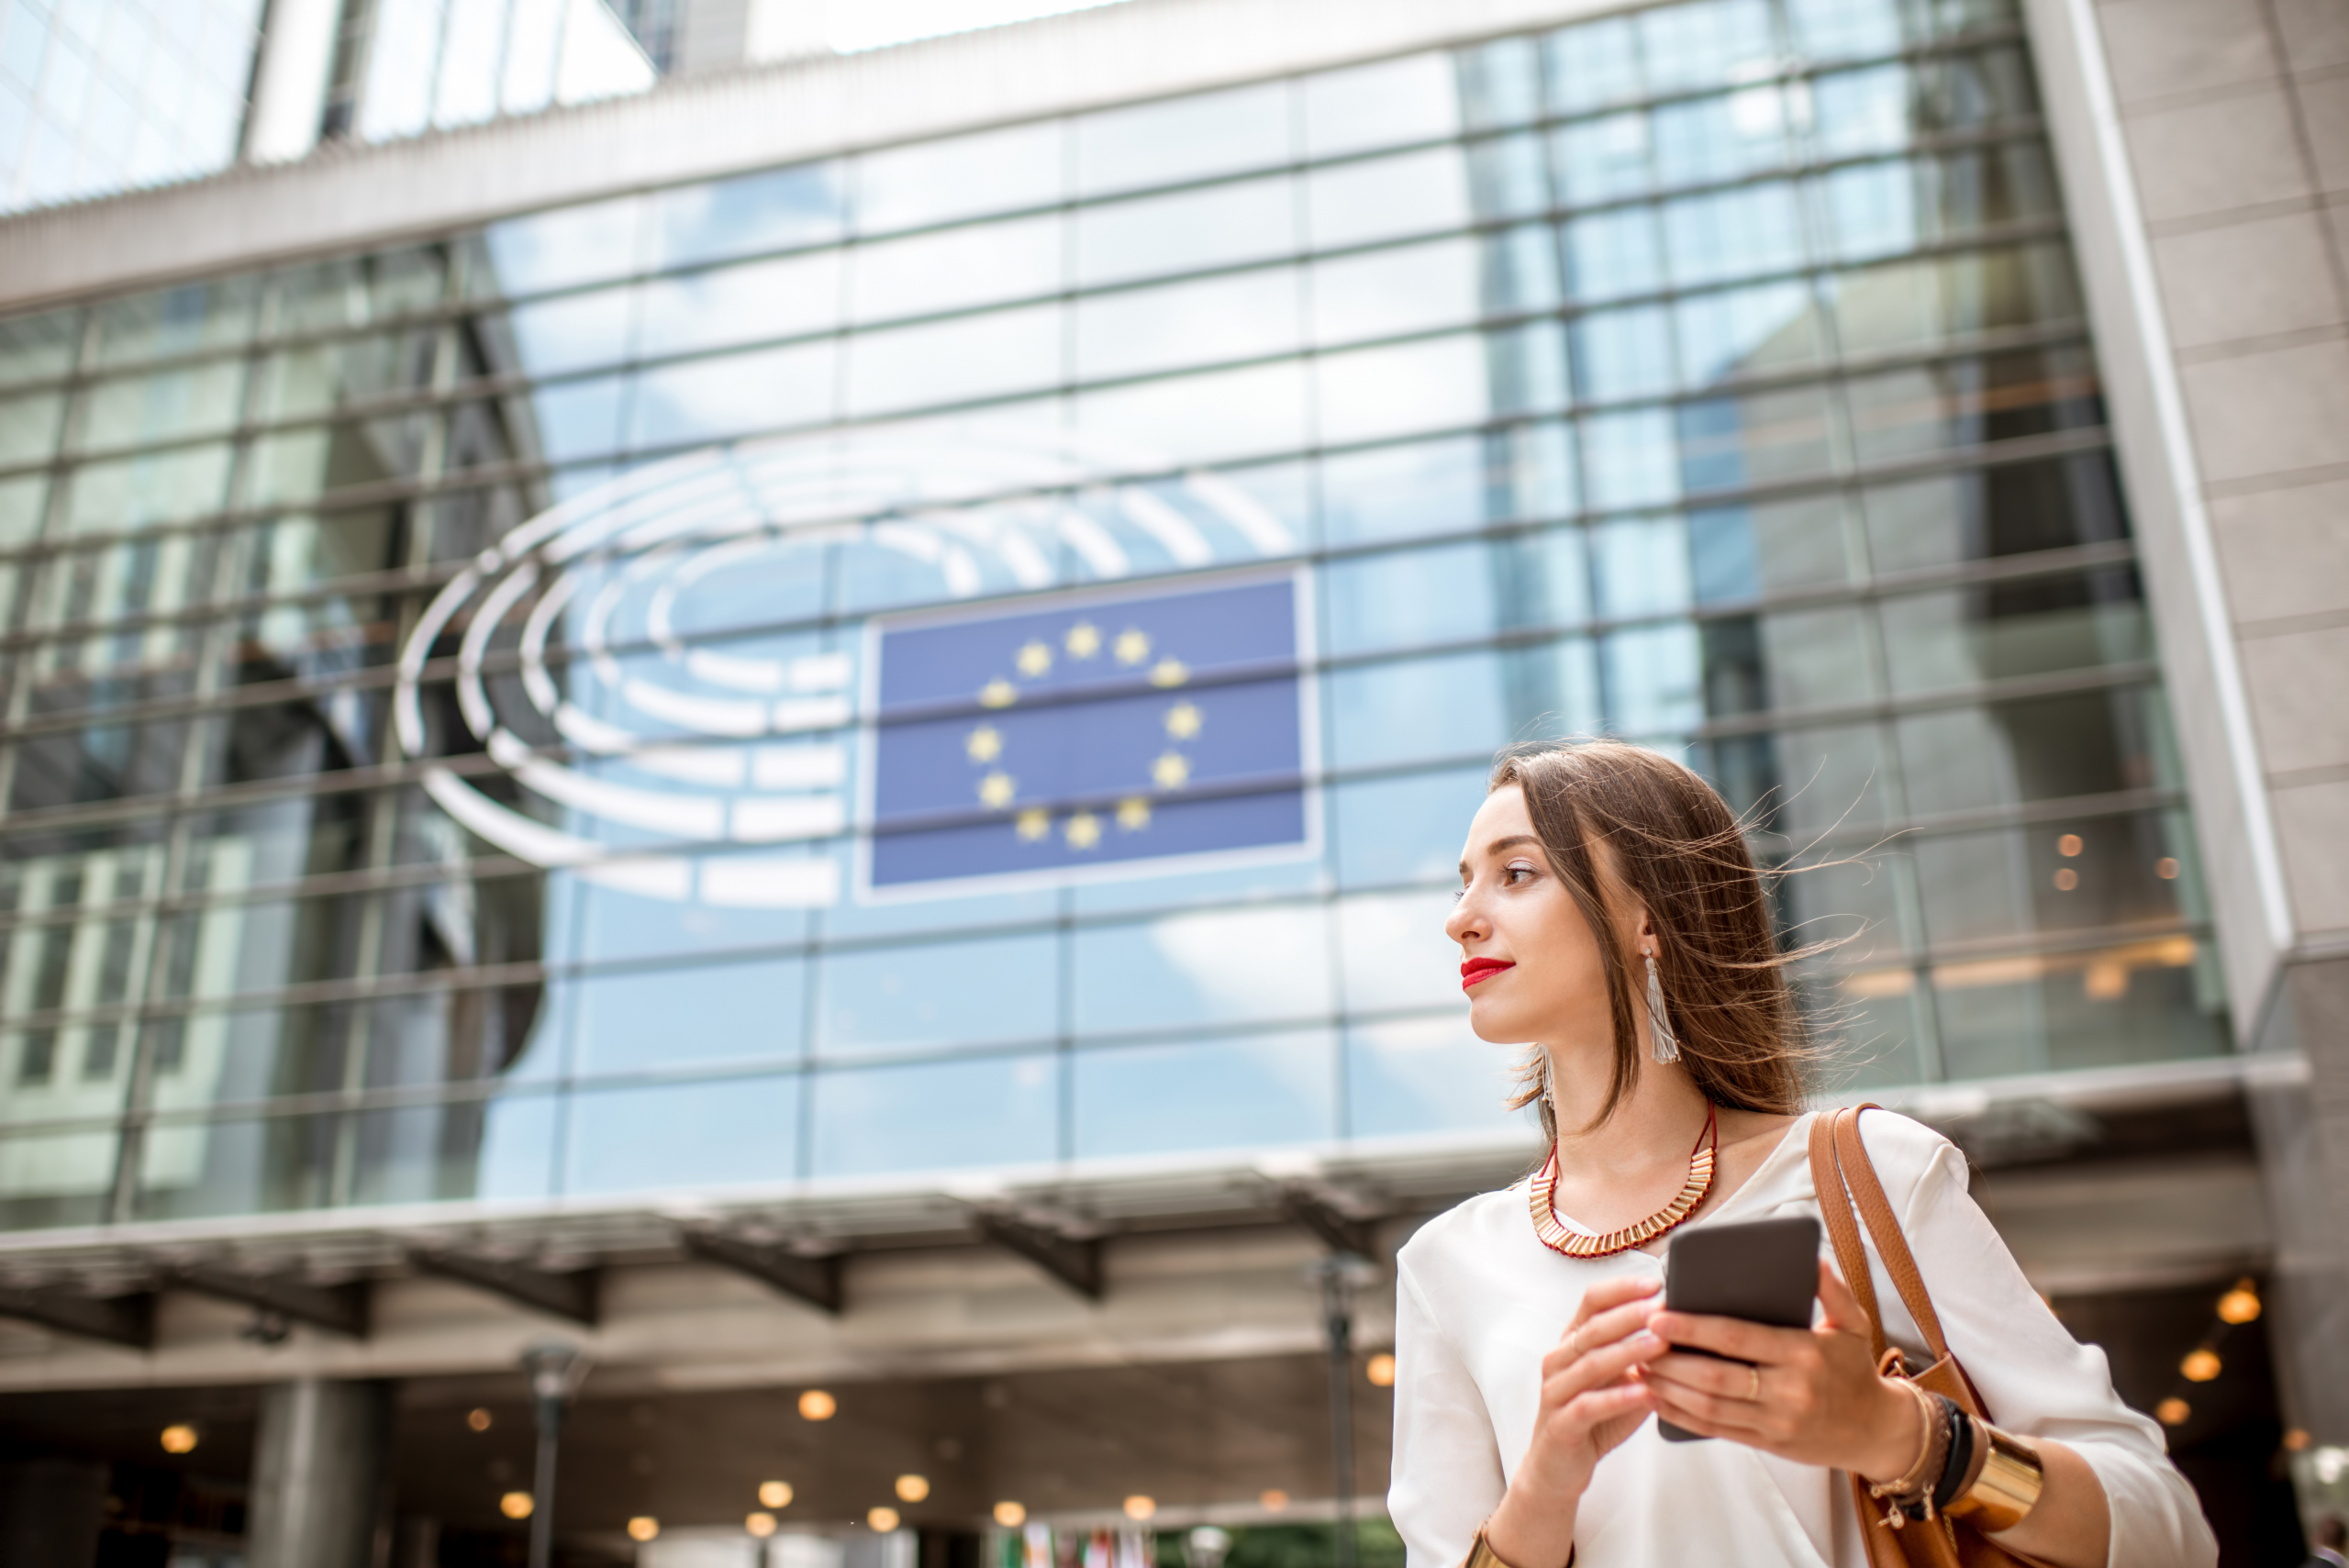 Frau in elegantem Business-Outfint steht vor Glasfront eines EU-Gebäudes.